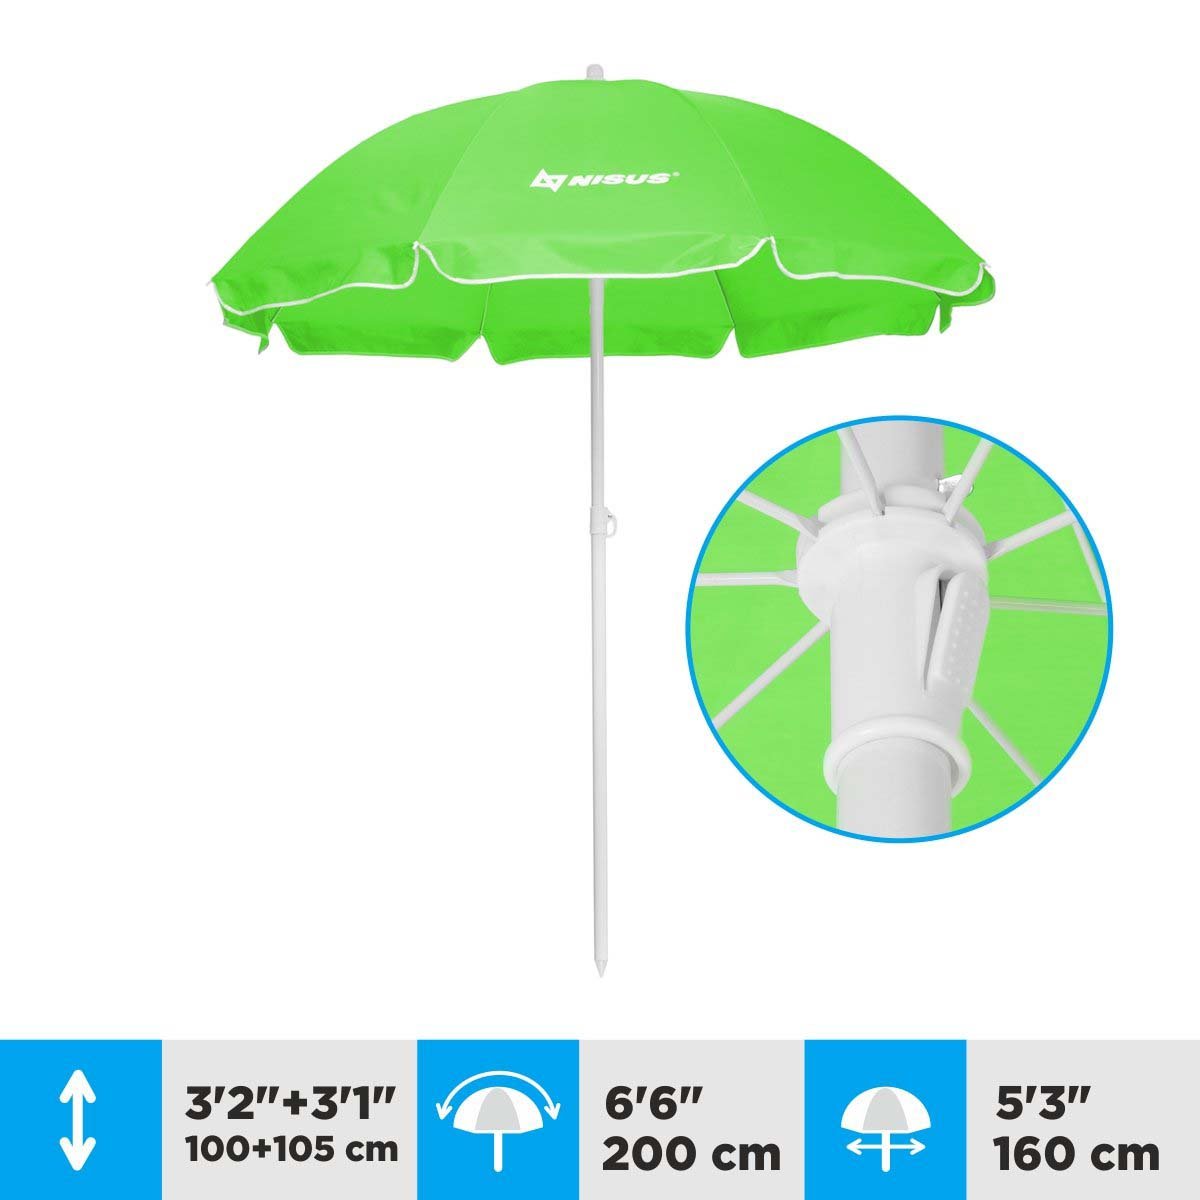 A 5.3 ft Green Tilting Beach Umbrella is 6.3 feet high